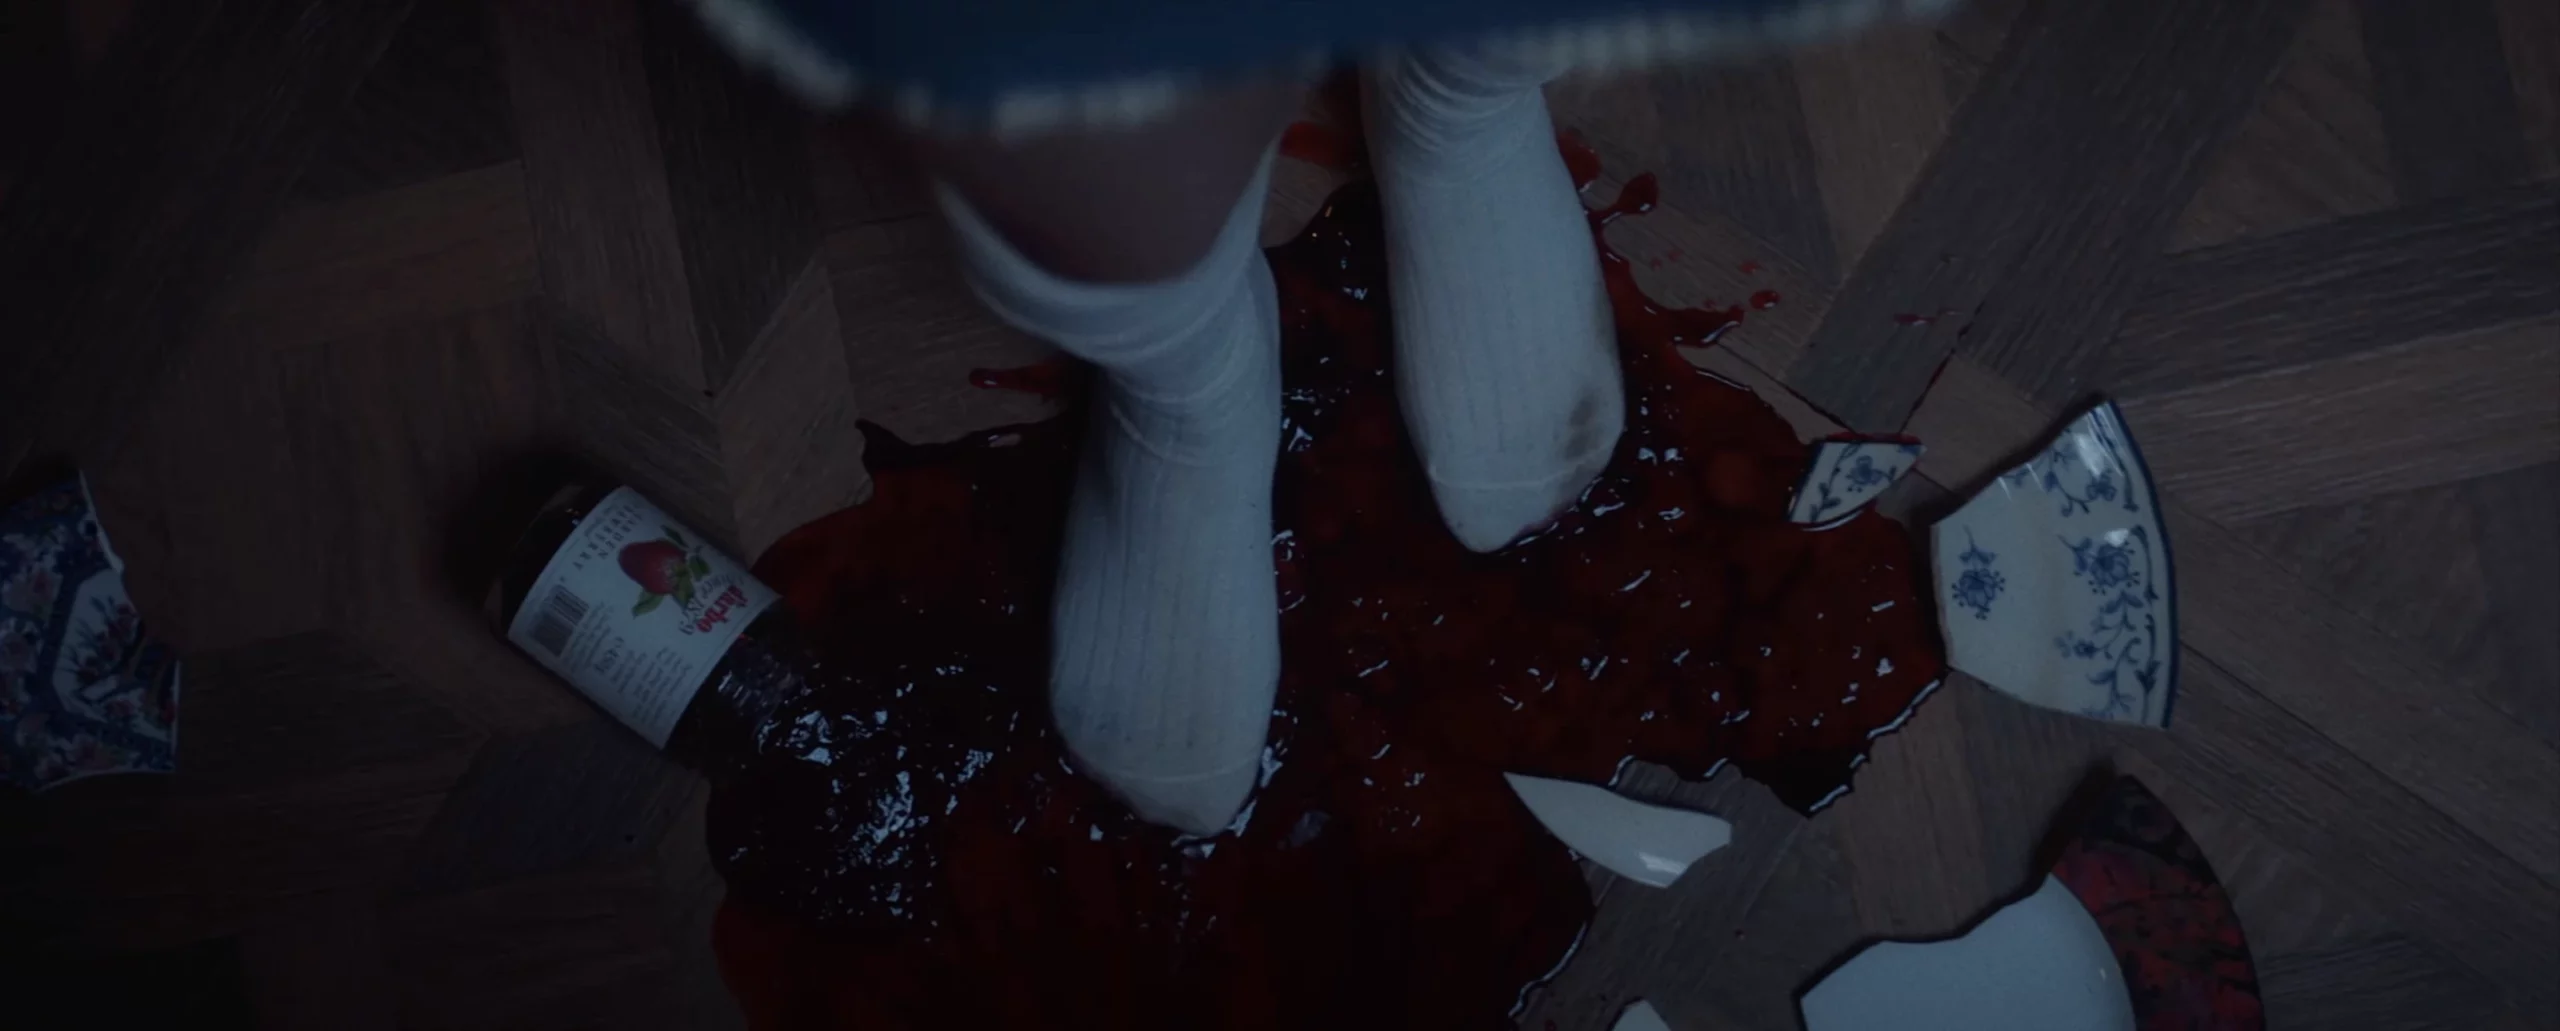 바닥에 흥건한 피, 딸기쨈?